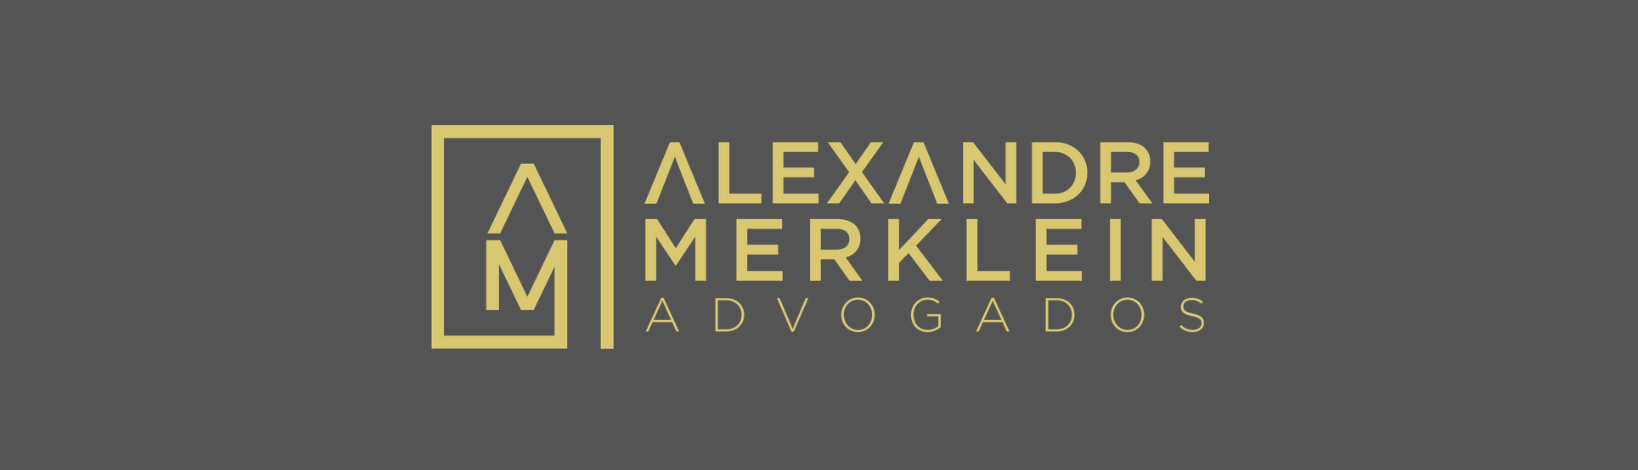 Alexandre Merklein Advogados